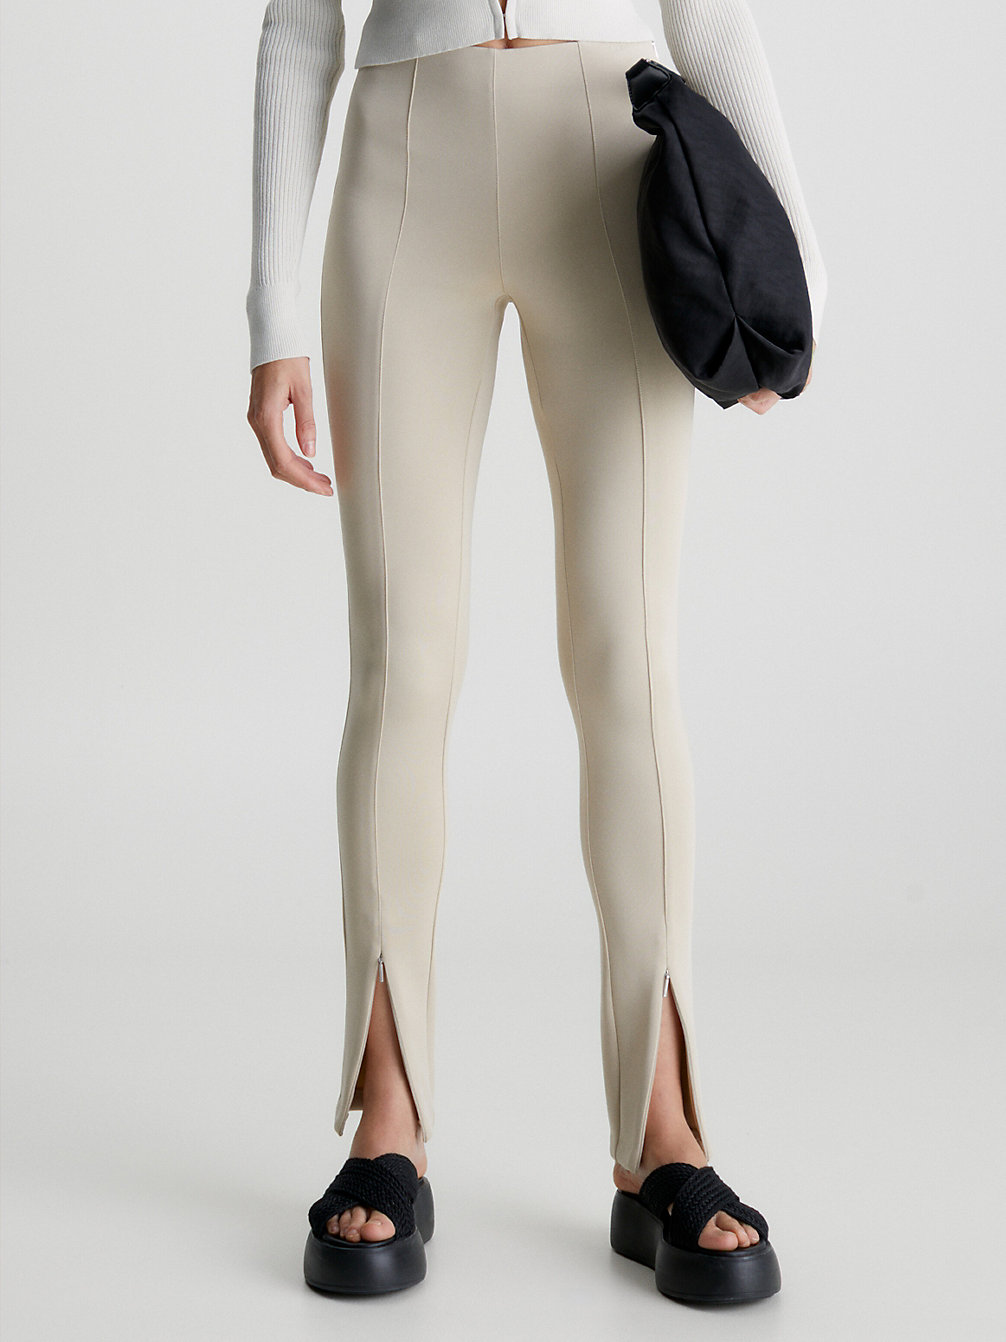 SMOOTH BEIGE > Skinny Technische Gebreide Legging > undefined dames - Calvin Klein